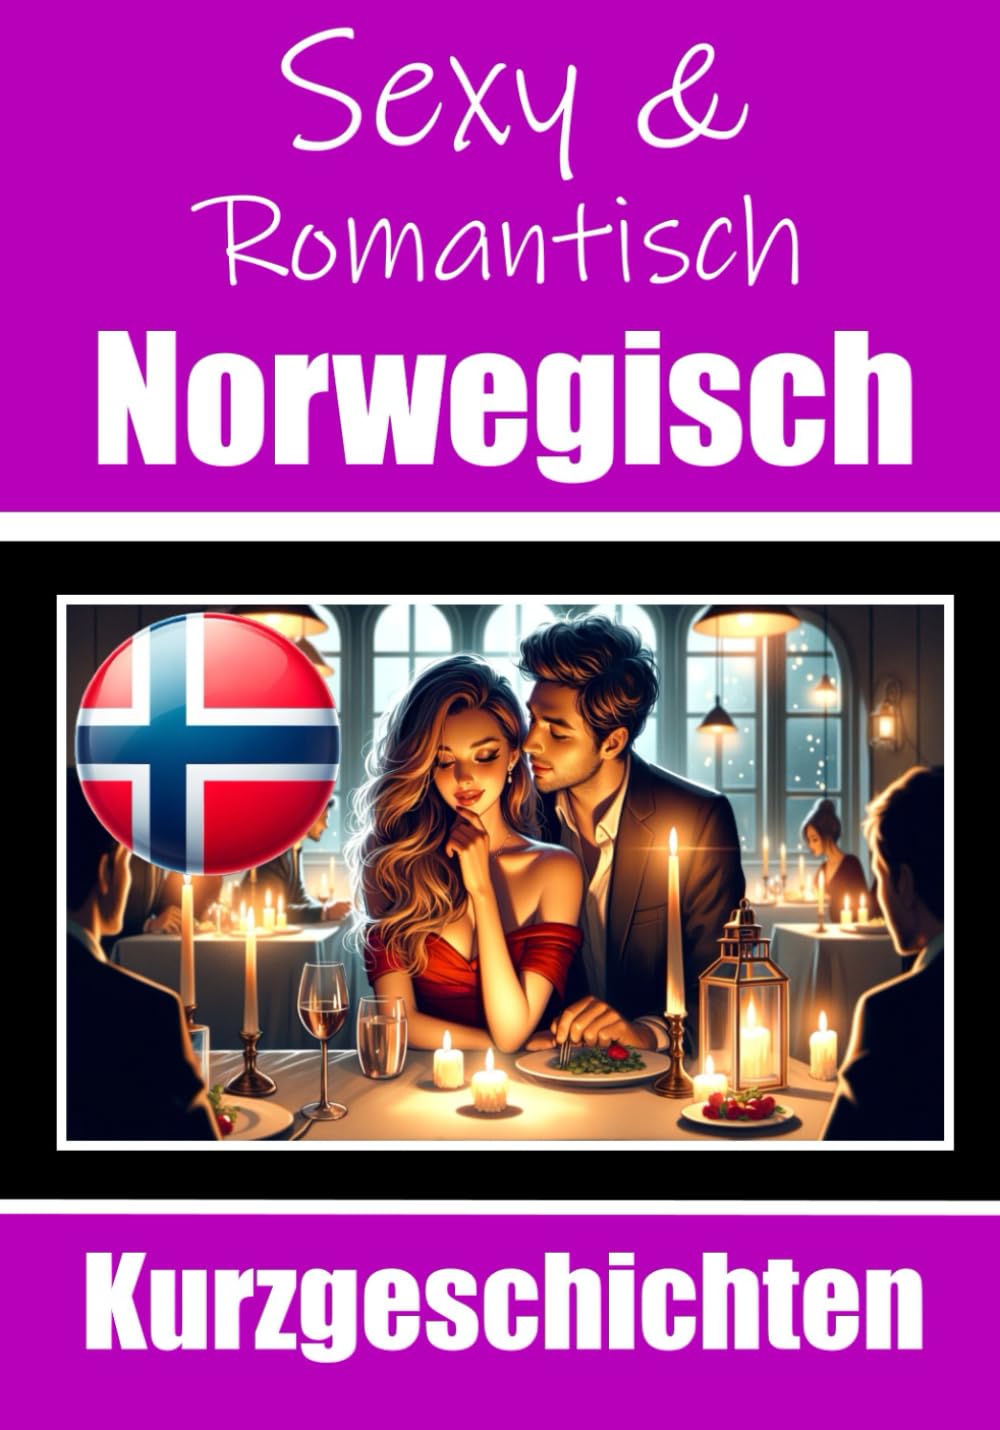 50 Sexy und Romantische Kurzgeschichten auf Norwegisch - Skriuwer.com